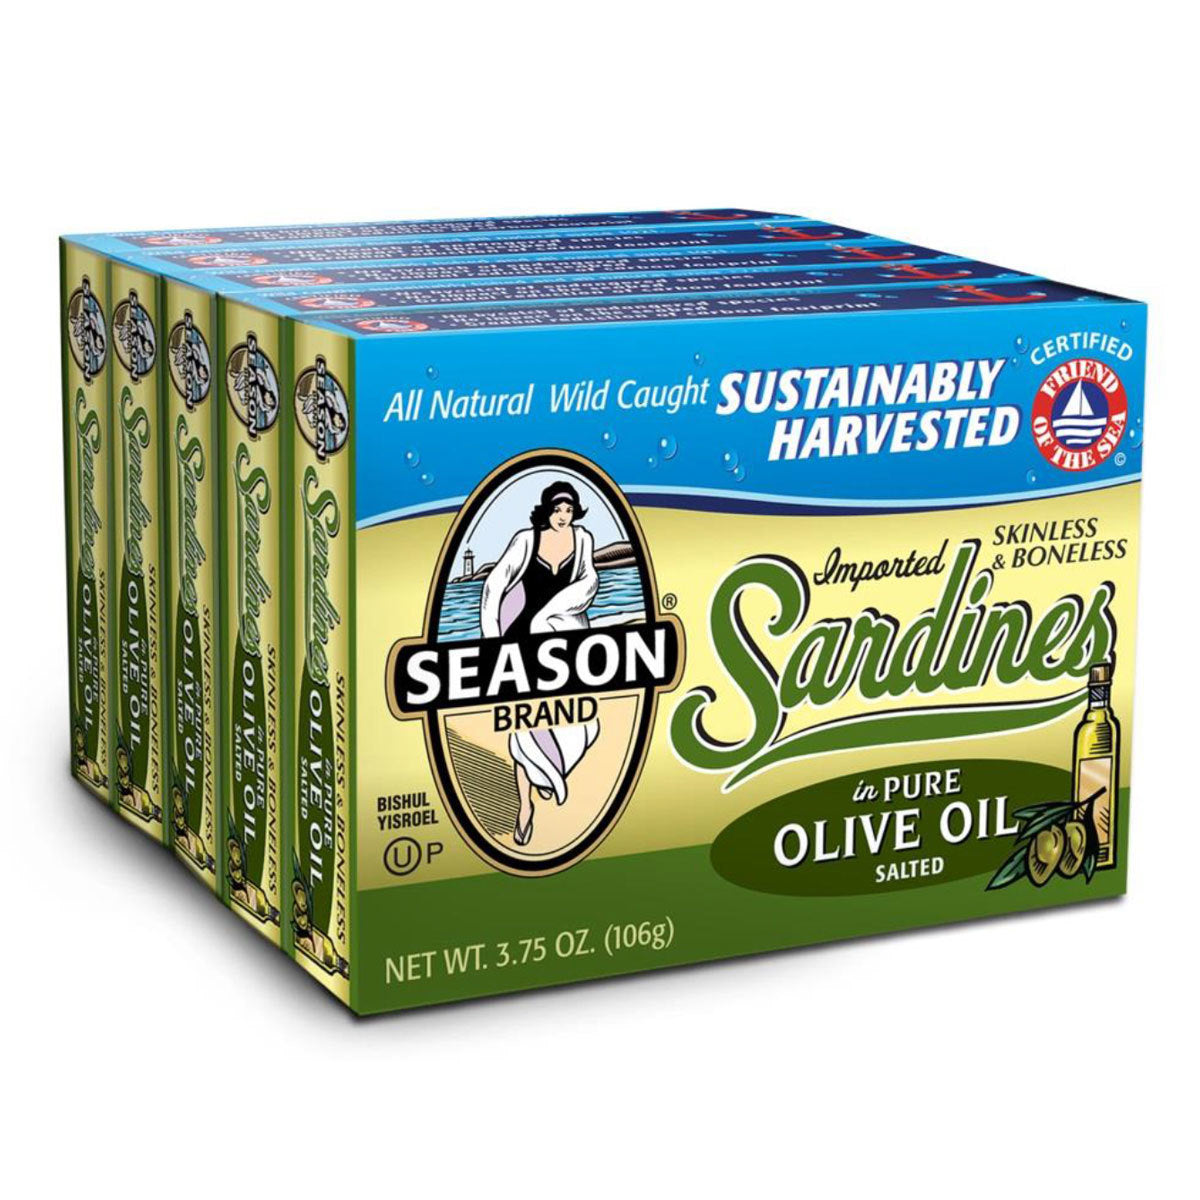 Season Sardines in Olive Oil, 6 x 125g Oil Costco UK   